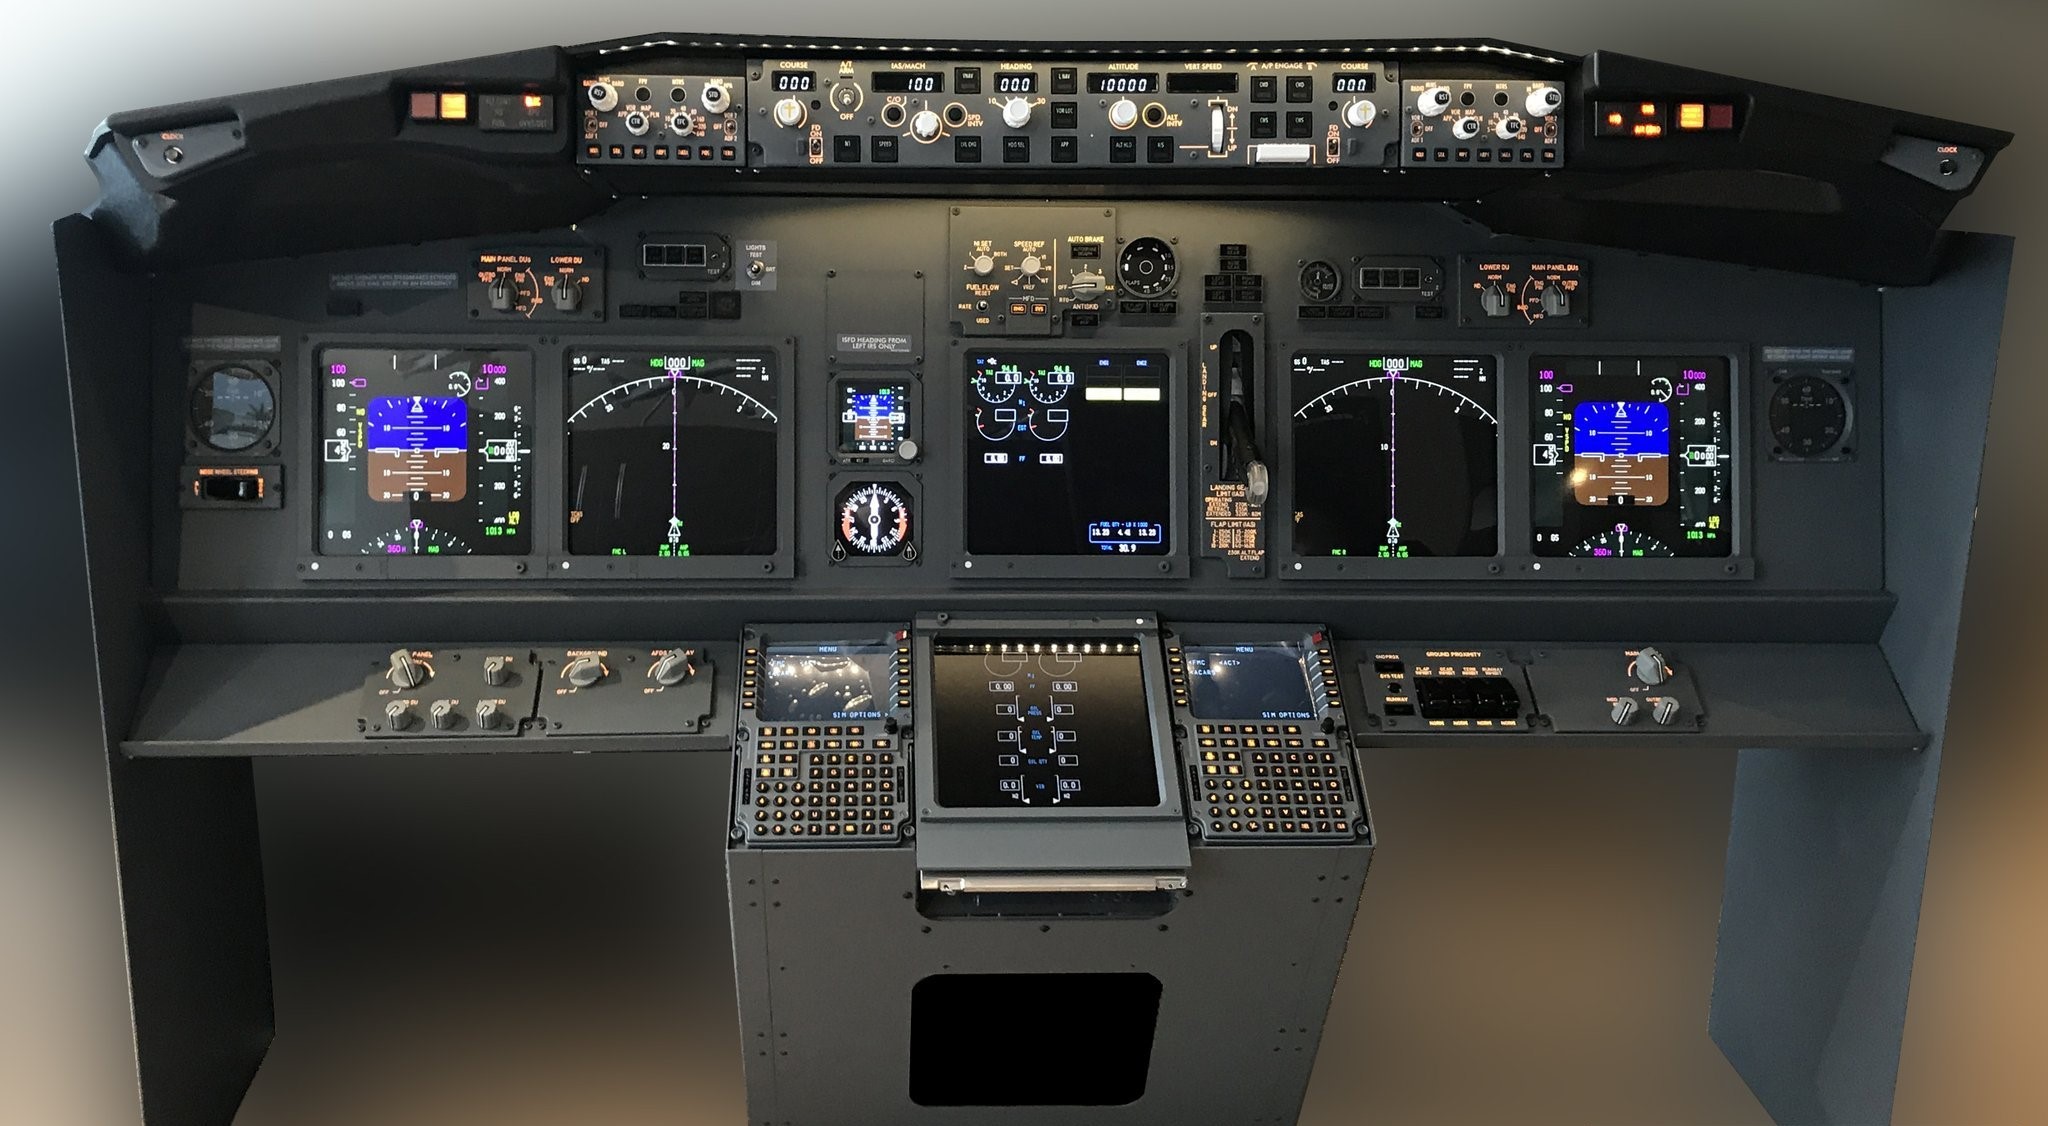 JetMax系列 飞行模拟器 方案书-9944 